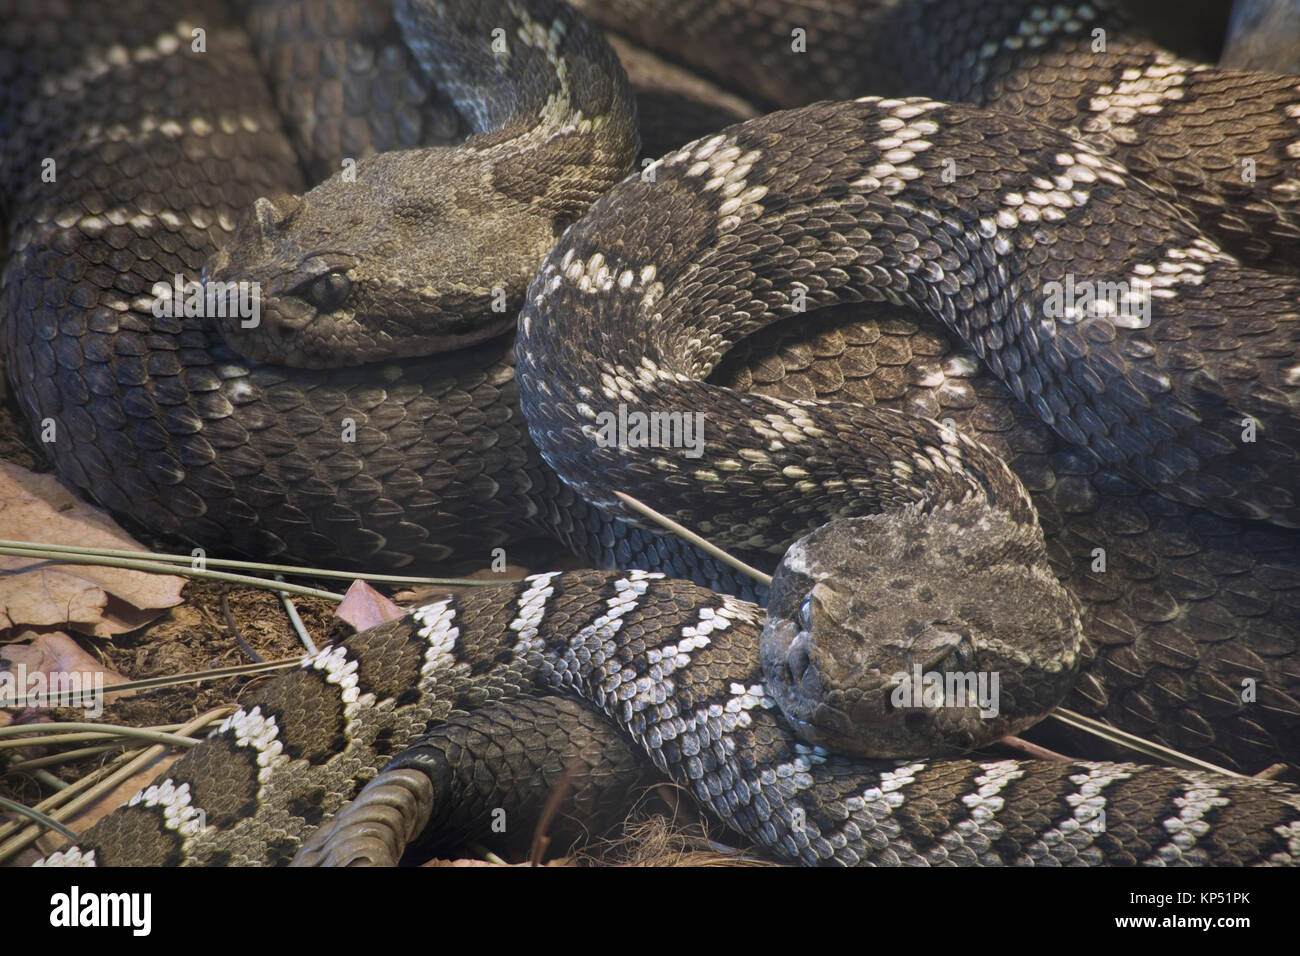 Arizona Black Rattlesnake Stock Photo